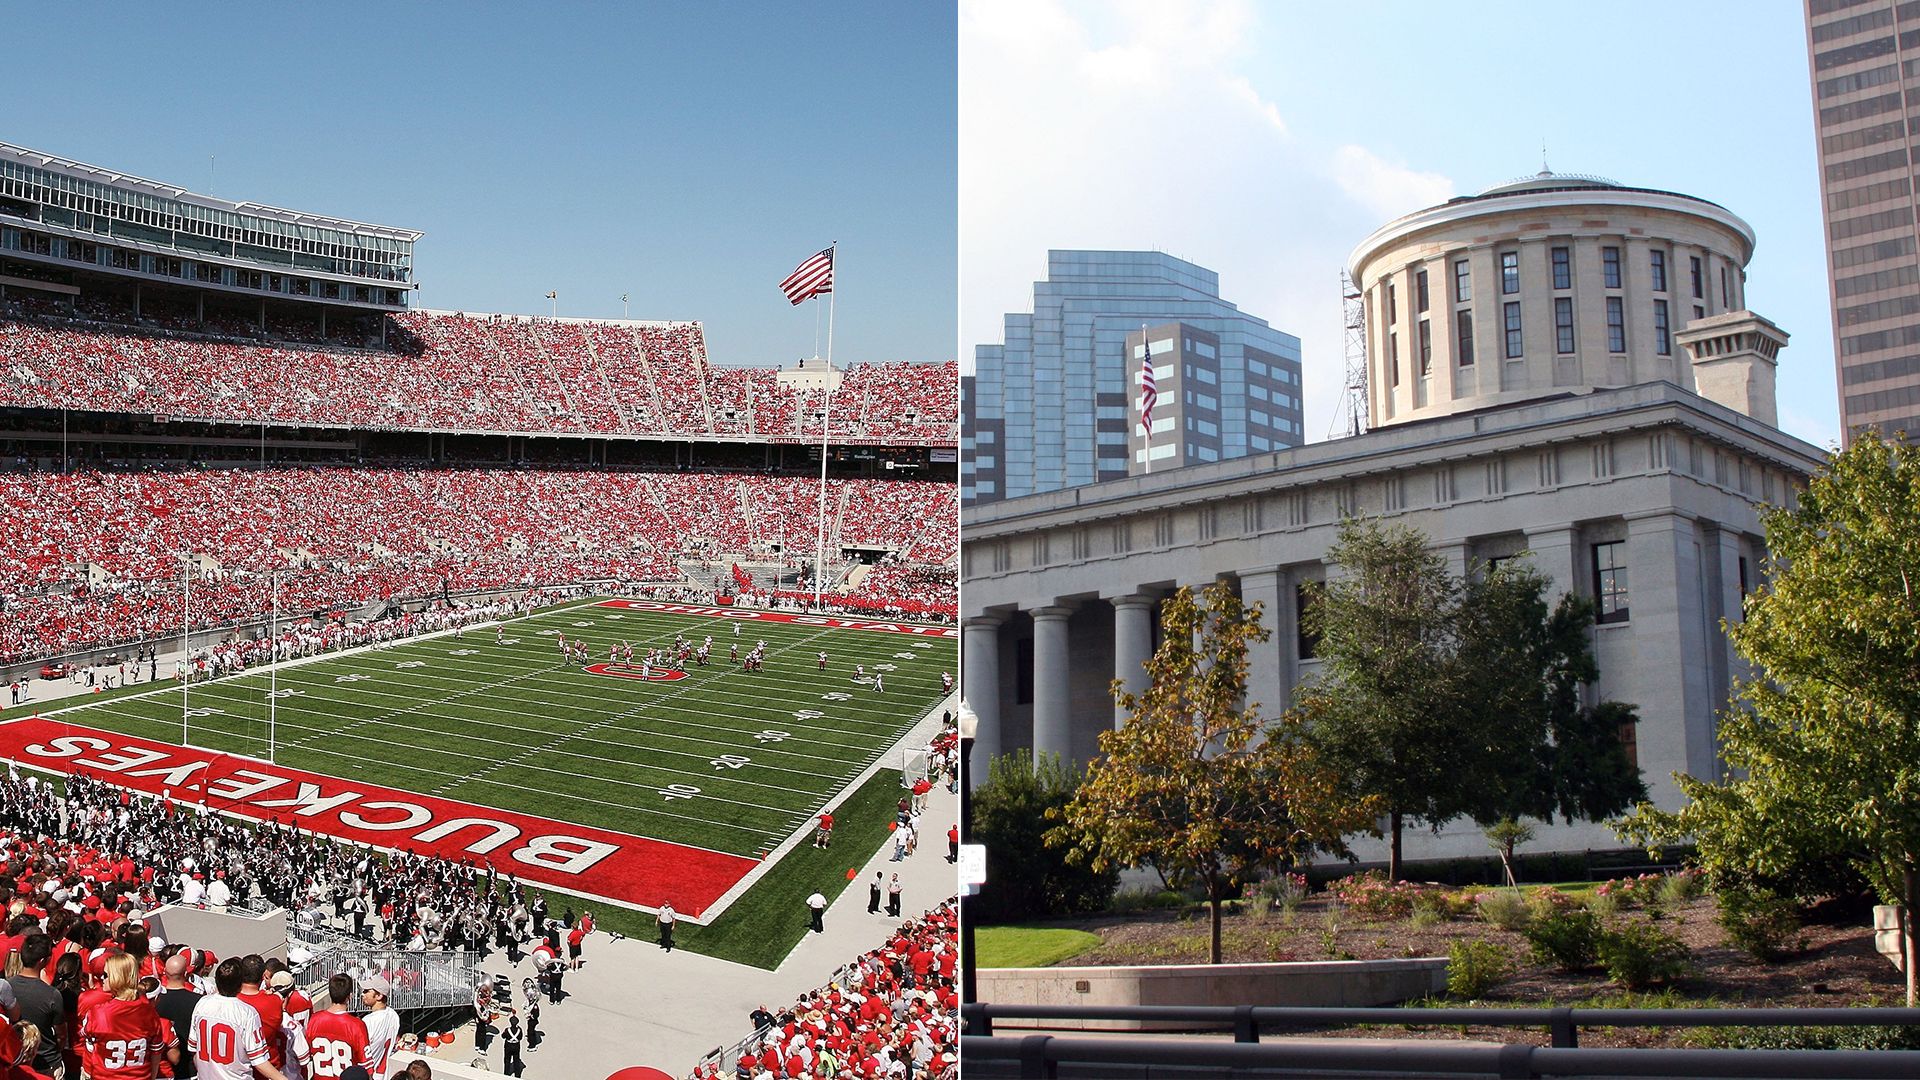 Side-by-side photos of Ohio Stadium and Ohio Statehouse